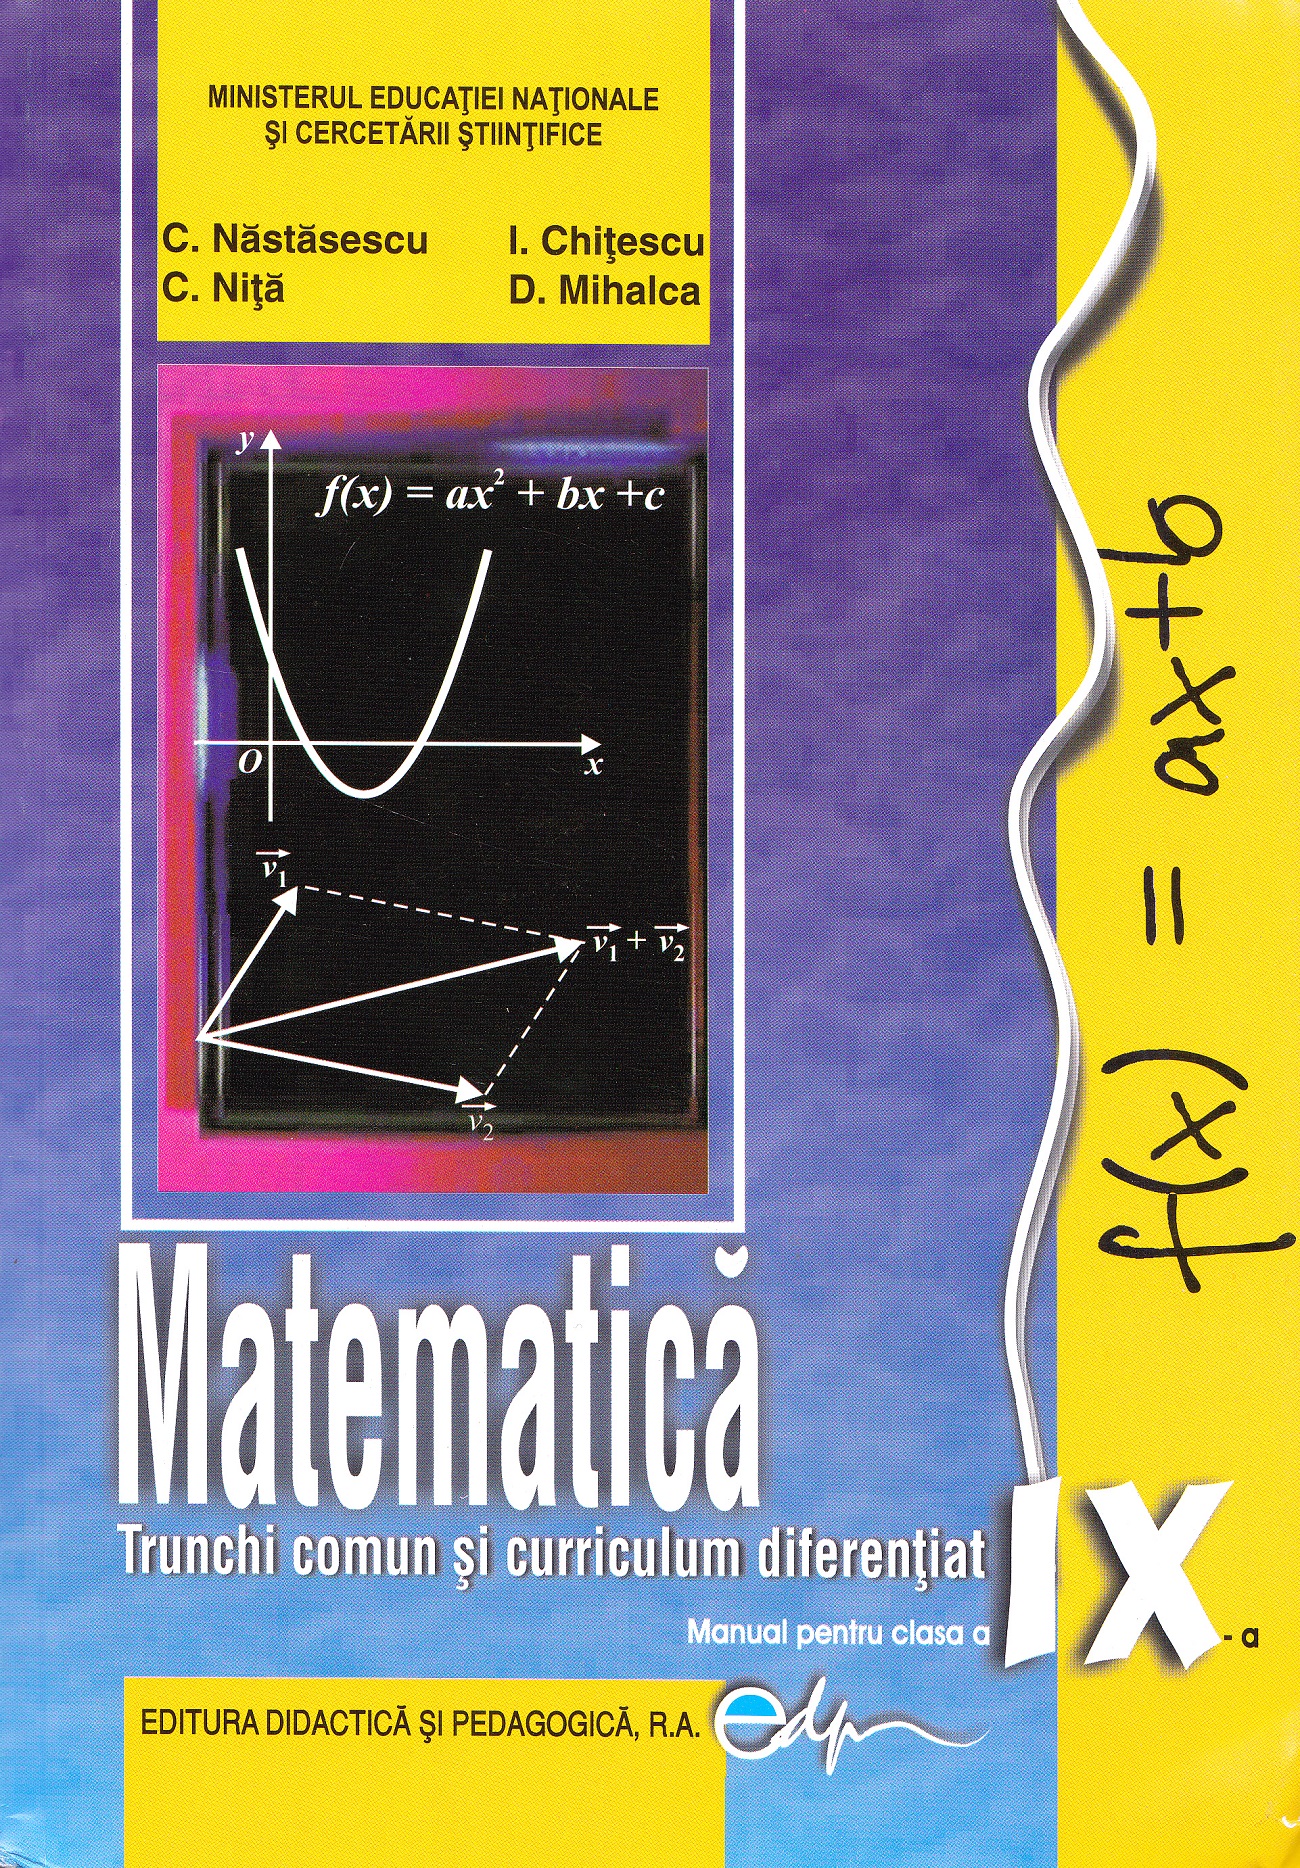 Matematica. Trunchi comun + Curriculum diferentiat - Clasa 9 - Manual - C. Nastasescu, C. Nita